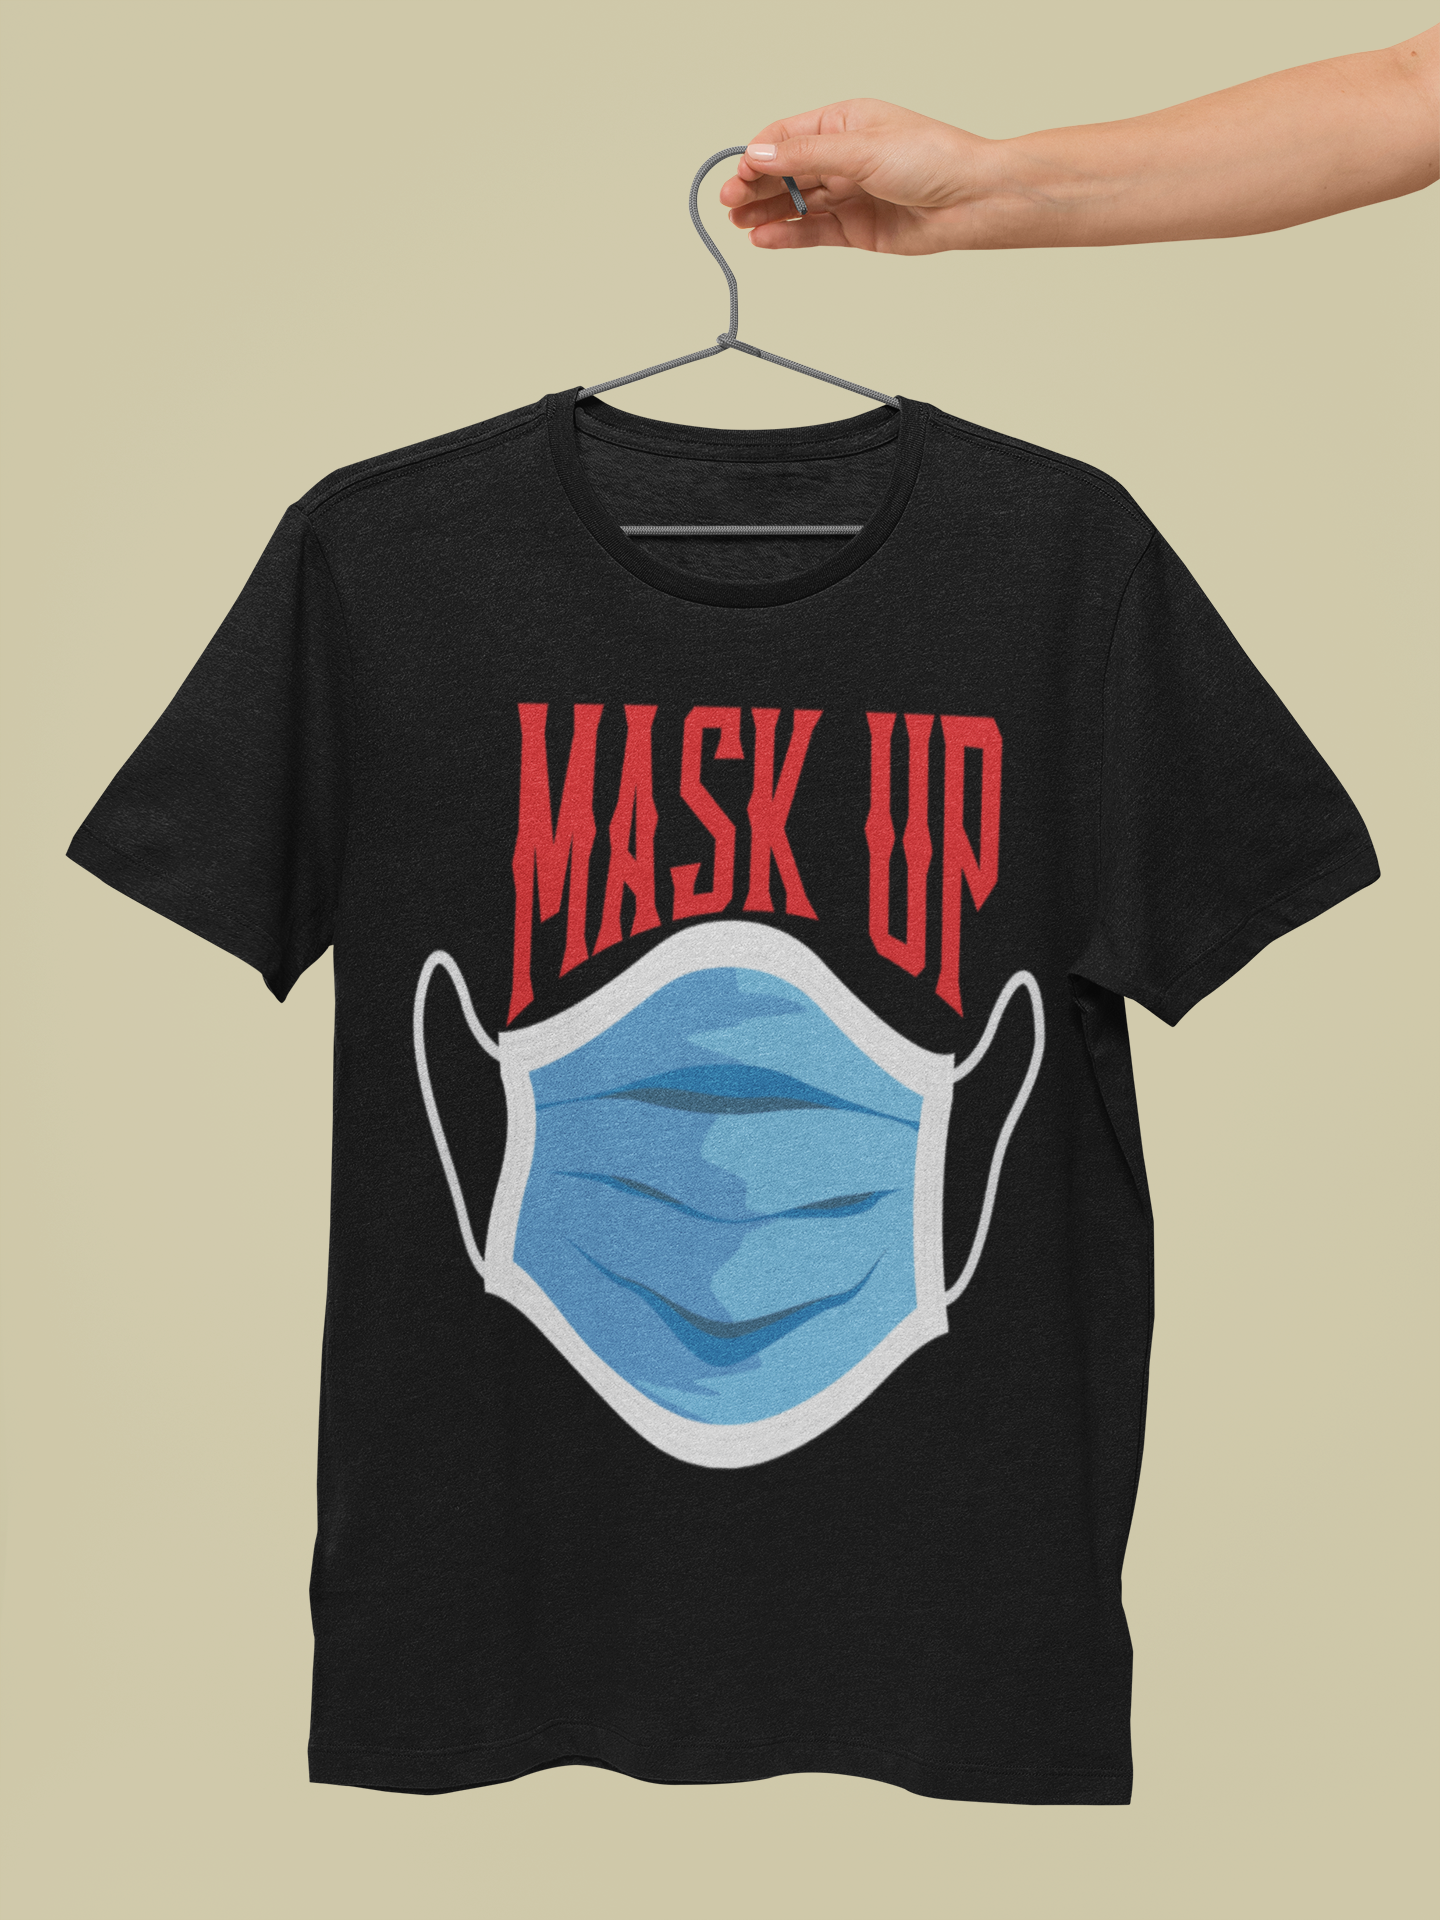 Mask Up Short-Sleeve Unisex T-Shirt || MRNGN CLOTHING